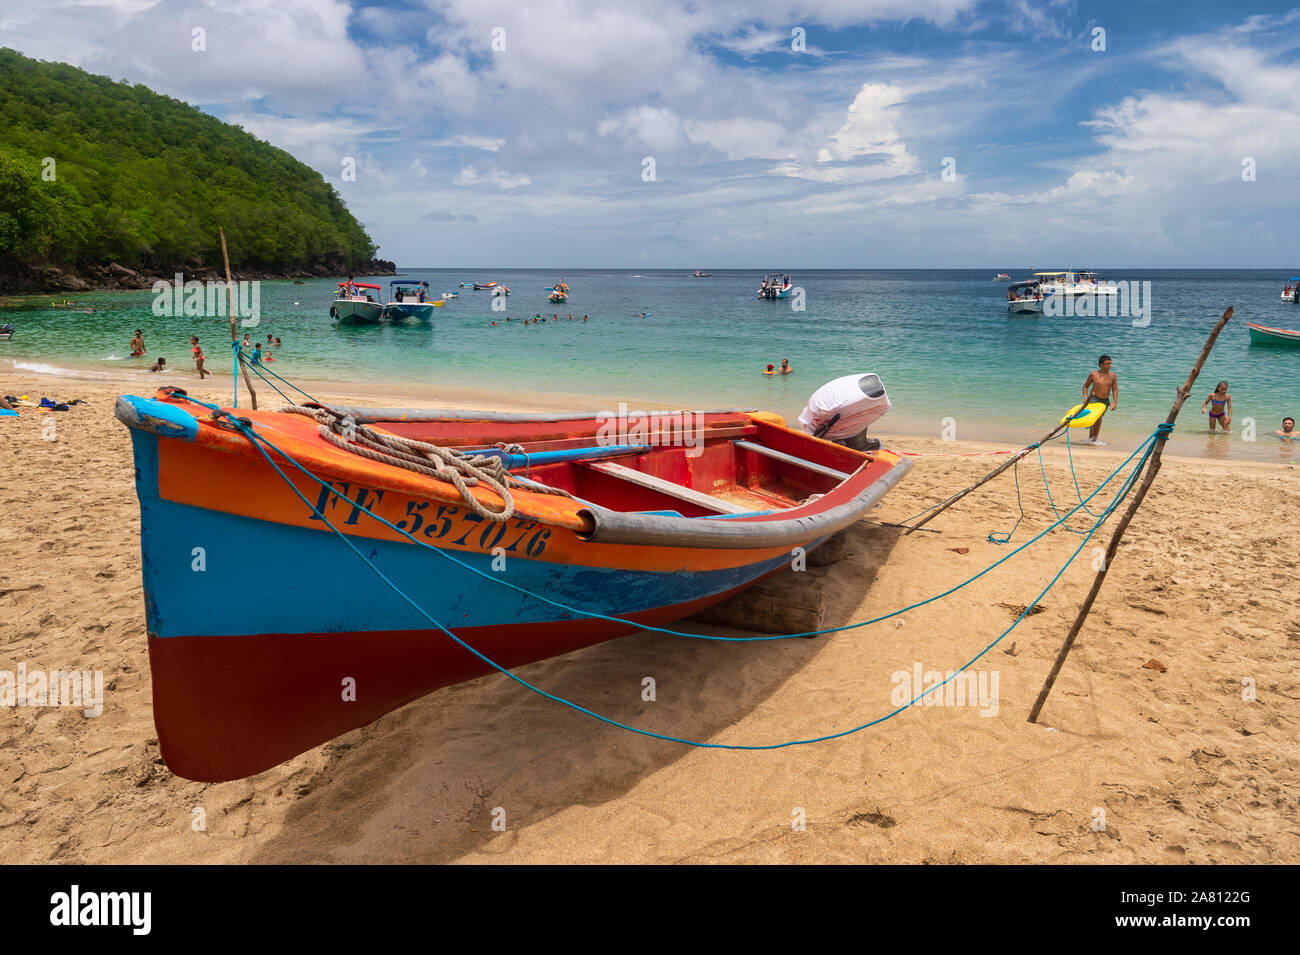 Martinica, Francia - 17 de agosto de 2019: coloridos barcos de pesca en el Anse Dufour. Foto de stock